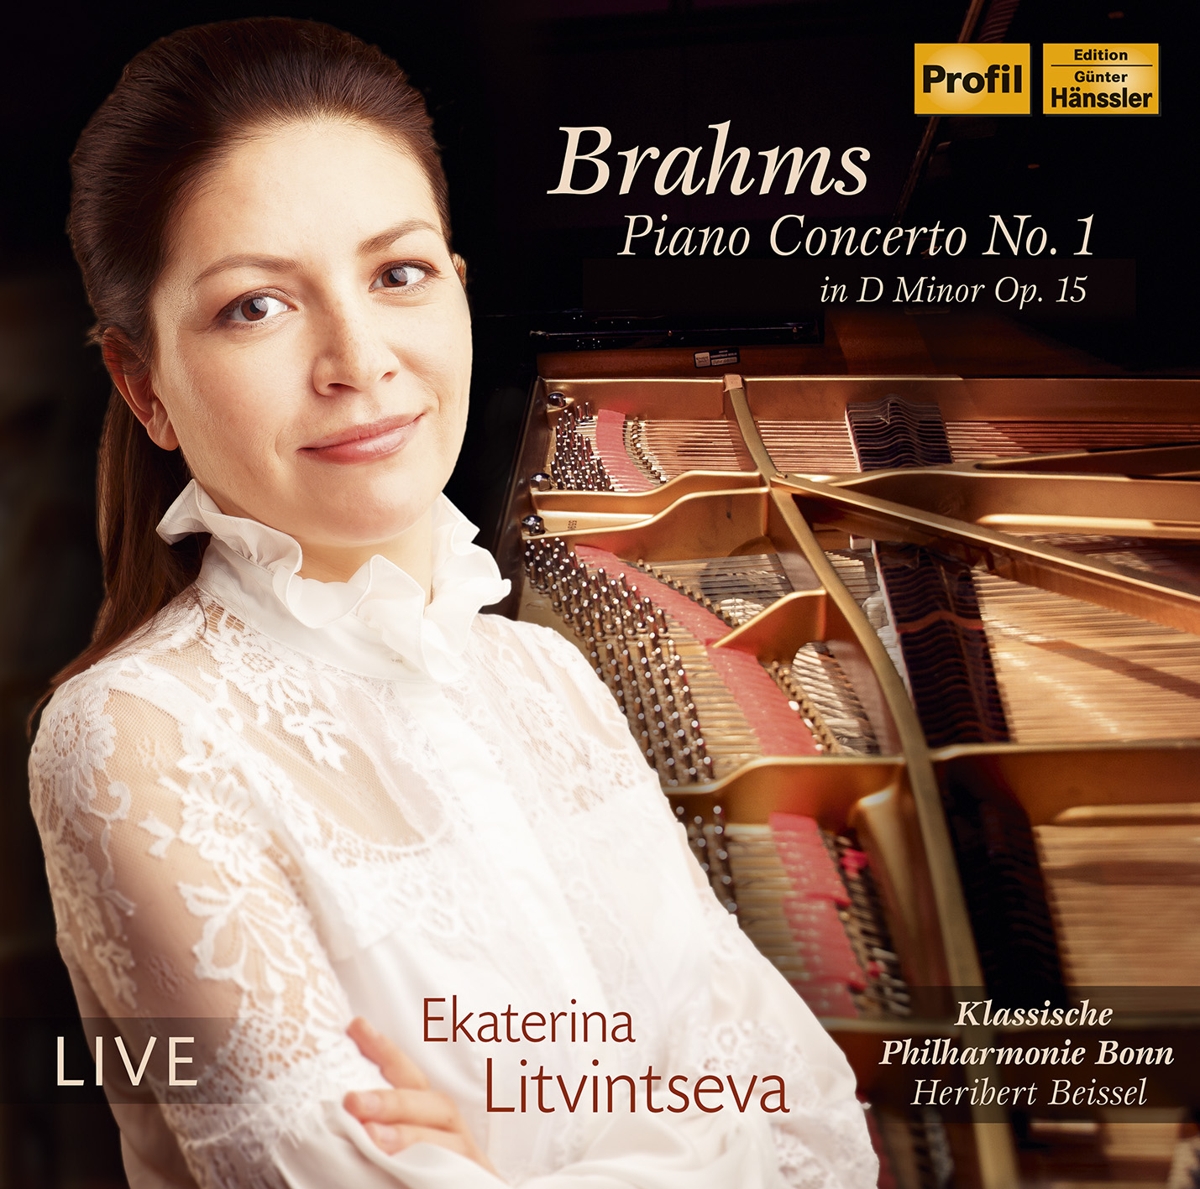 Brahms: Klavierkonzerte 1